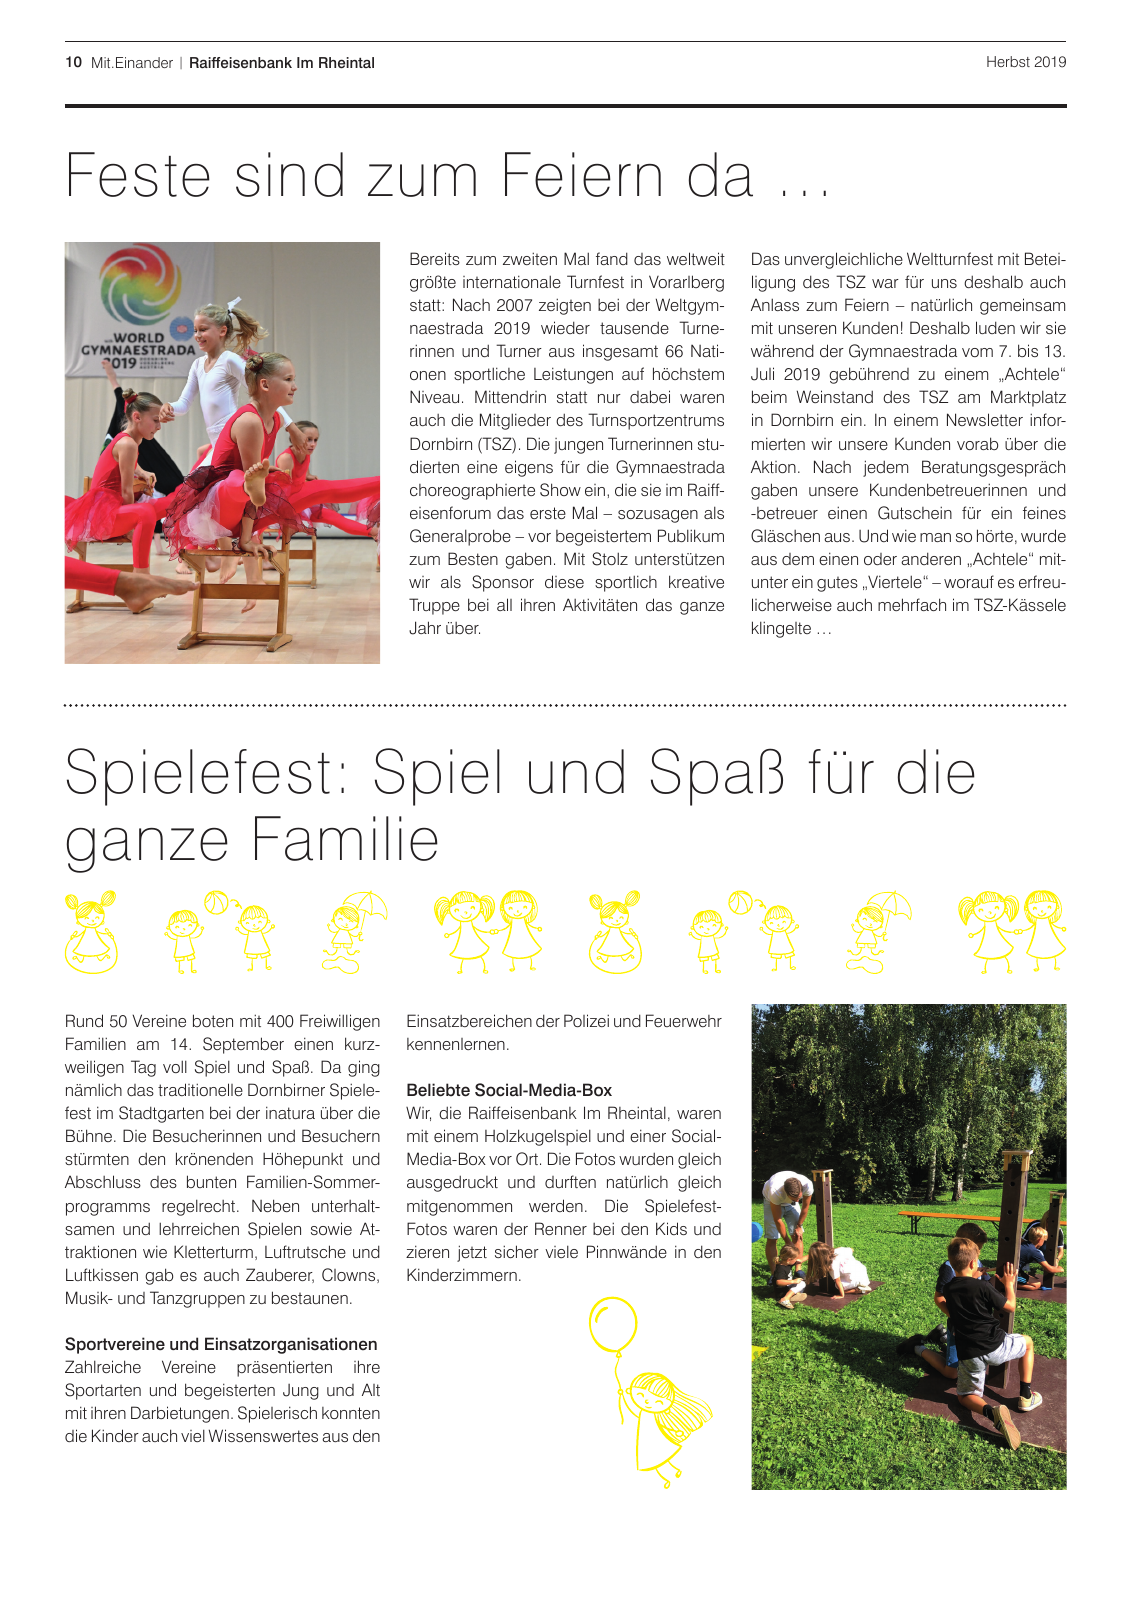 Vorschau Mitgliederzeitung RB im Rheintal Herbst 2019 Seite 10